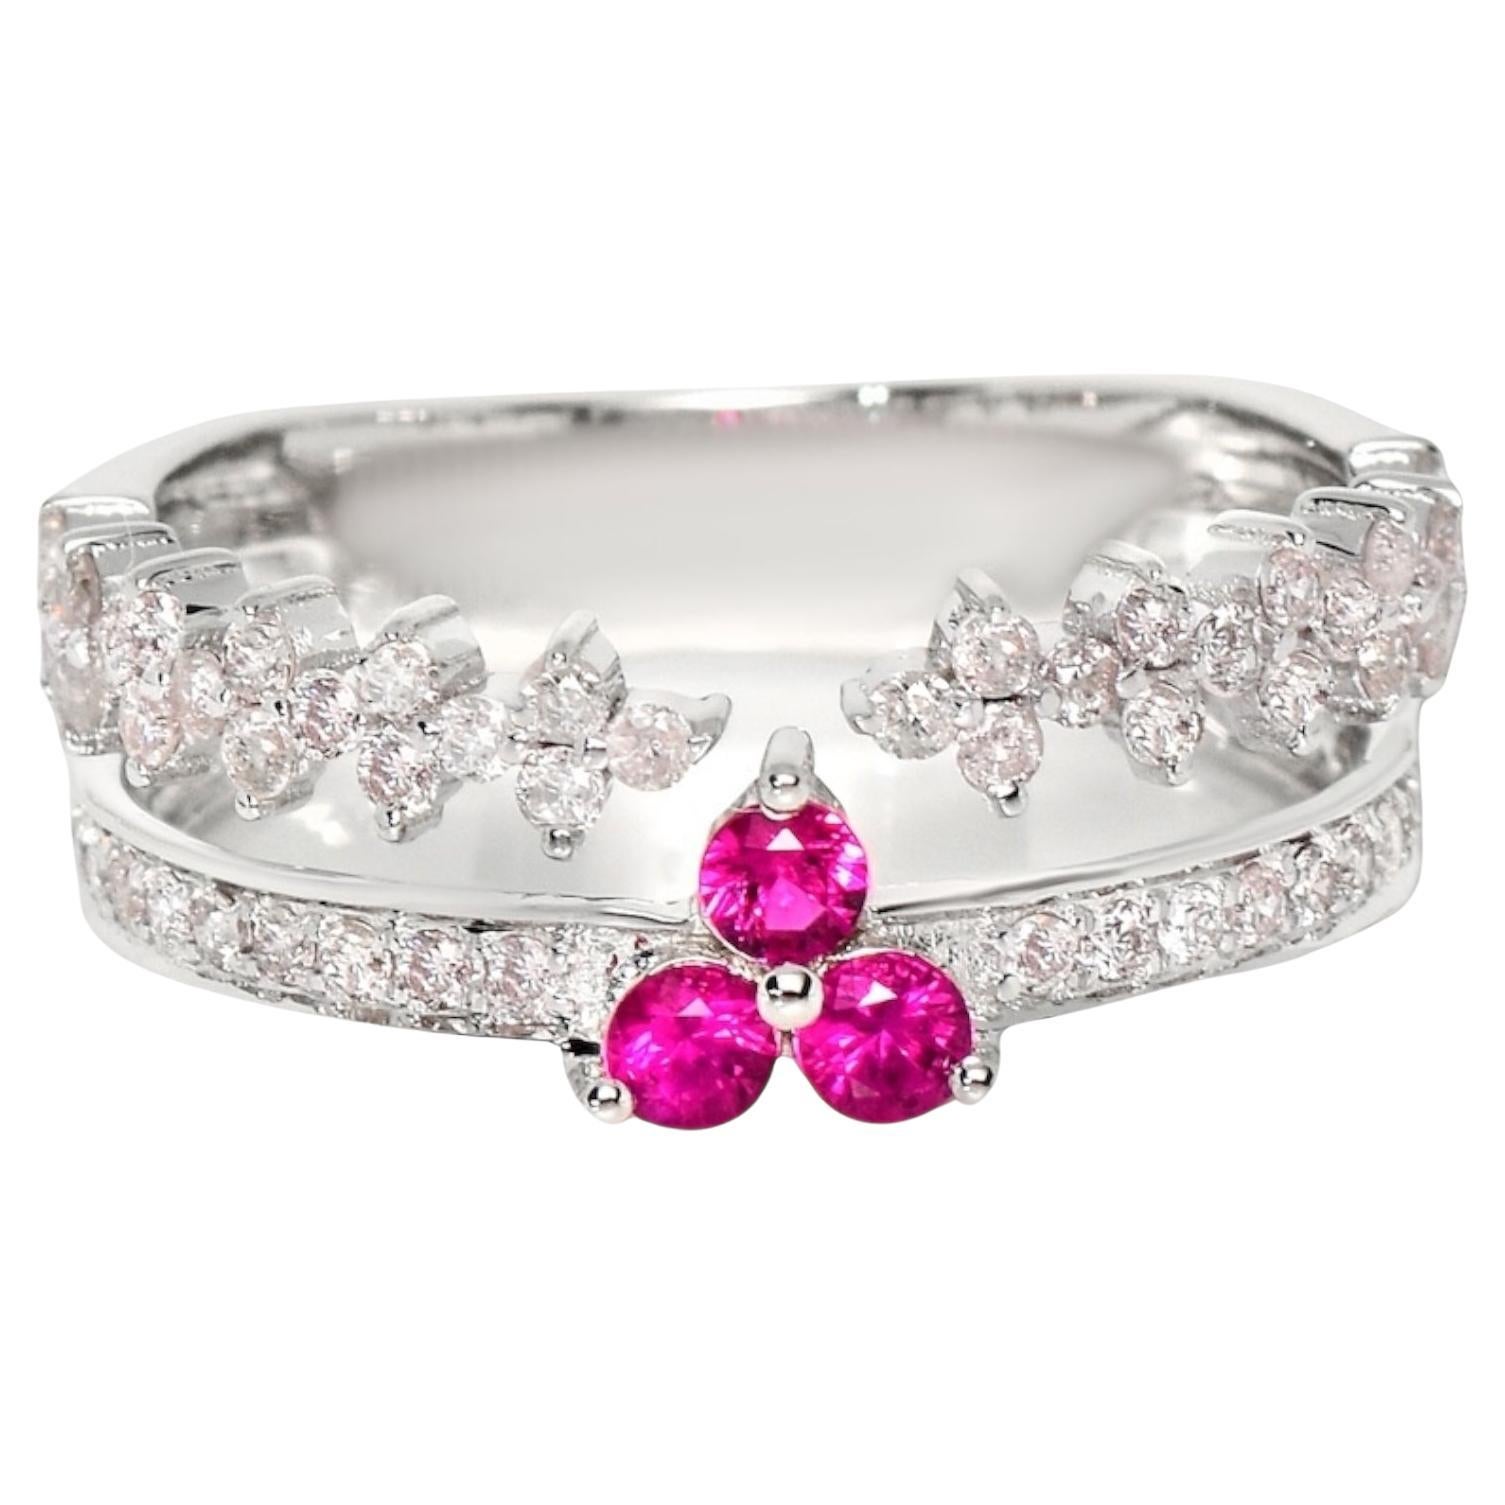 IGI 14K 0.55 ct Natural Pink Diamonds&Ruby Vintage Engagement Ring